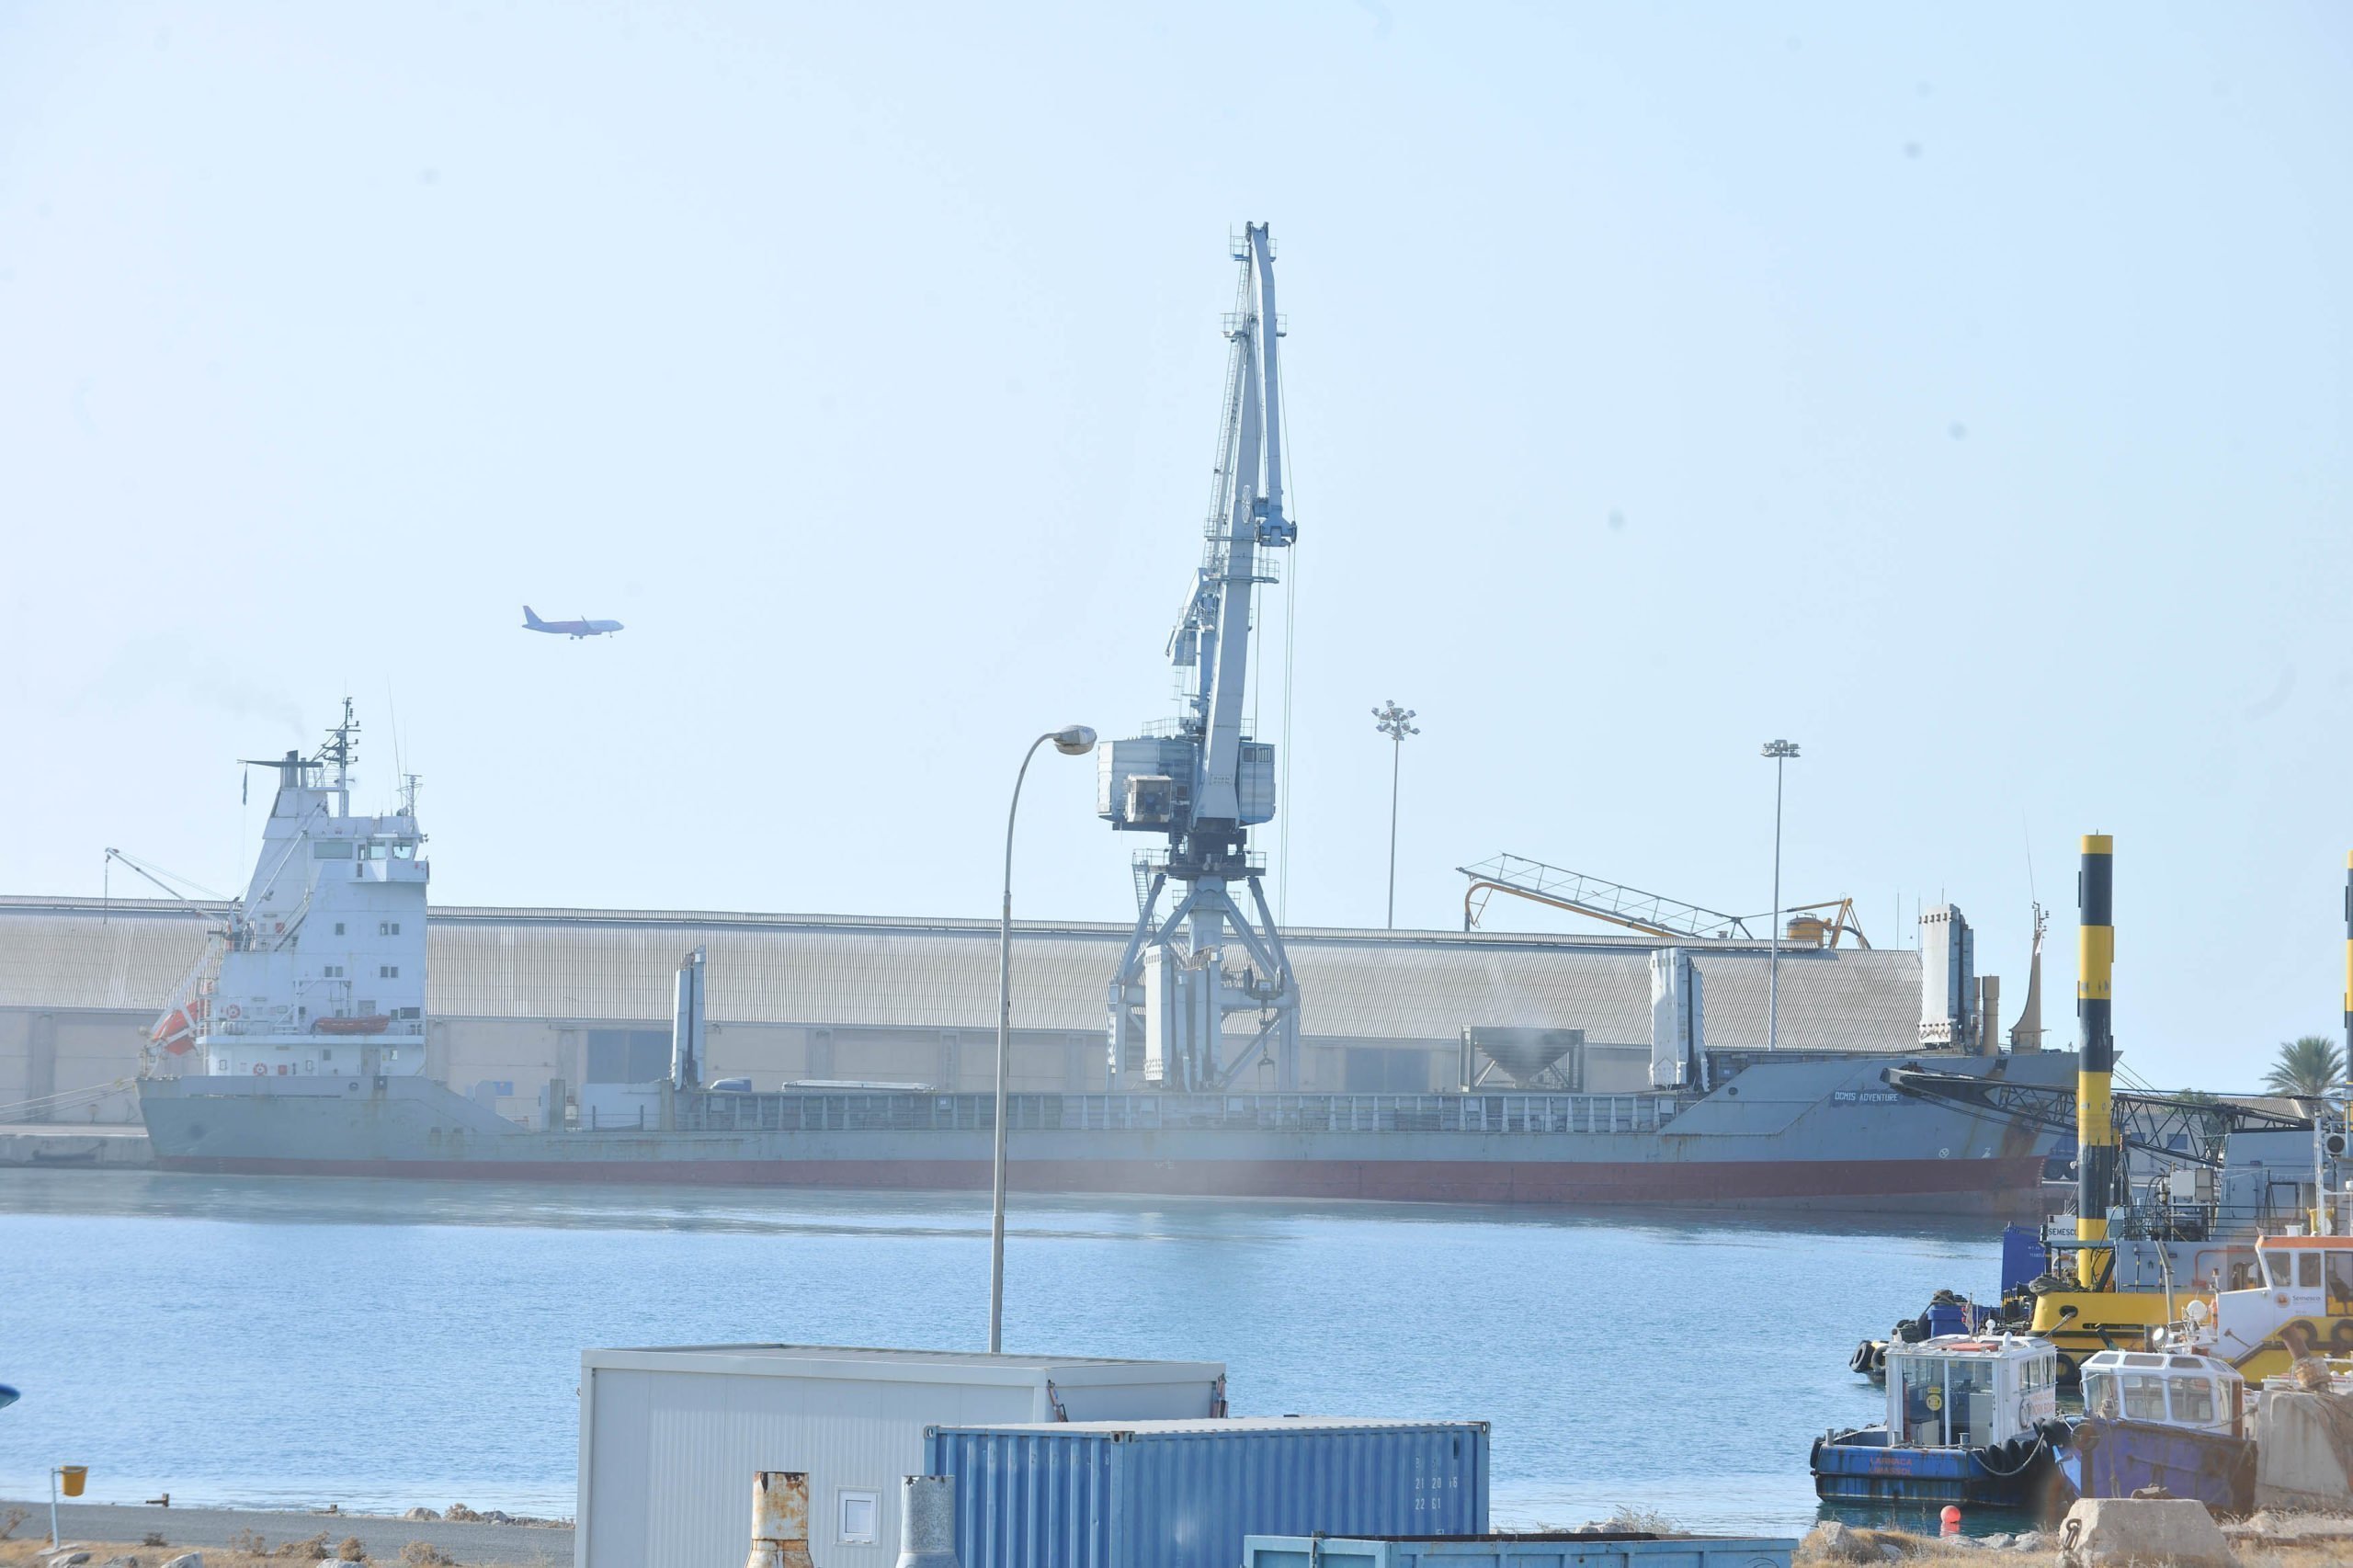 Αναχωρεί εντός του επόμενου 24ωρου το πλοίο από τη Λάρνακα για τη Γάζα, λέει ο ΠτΔ